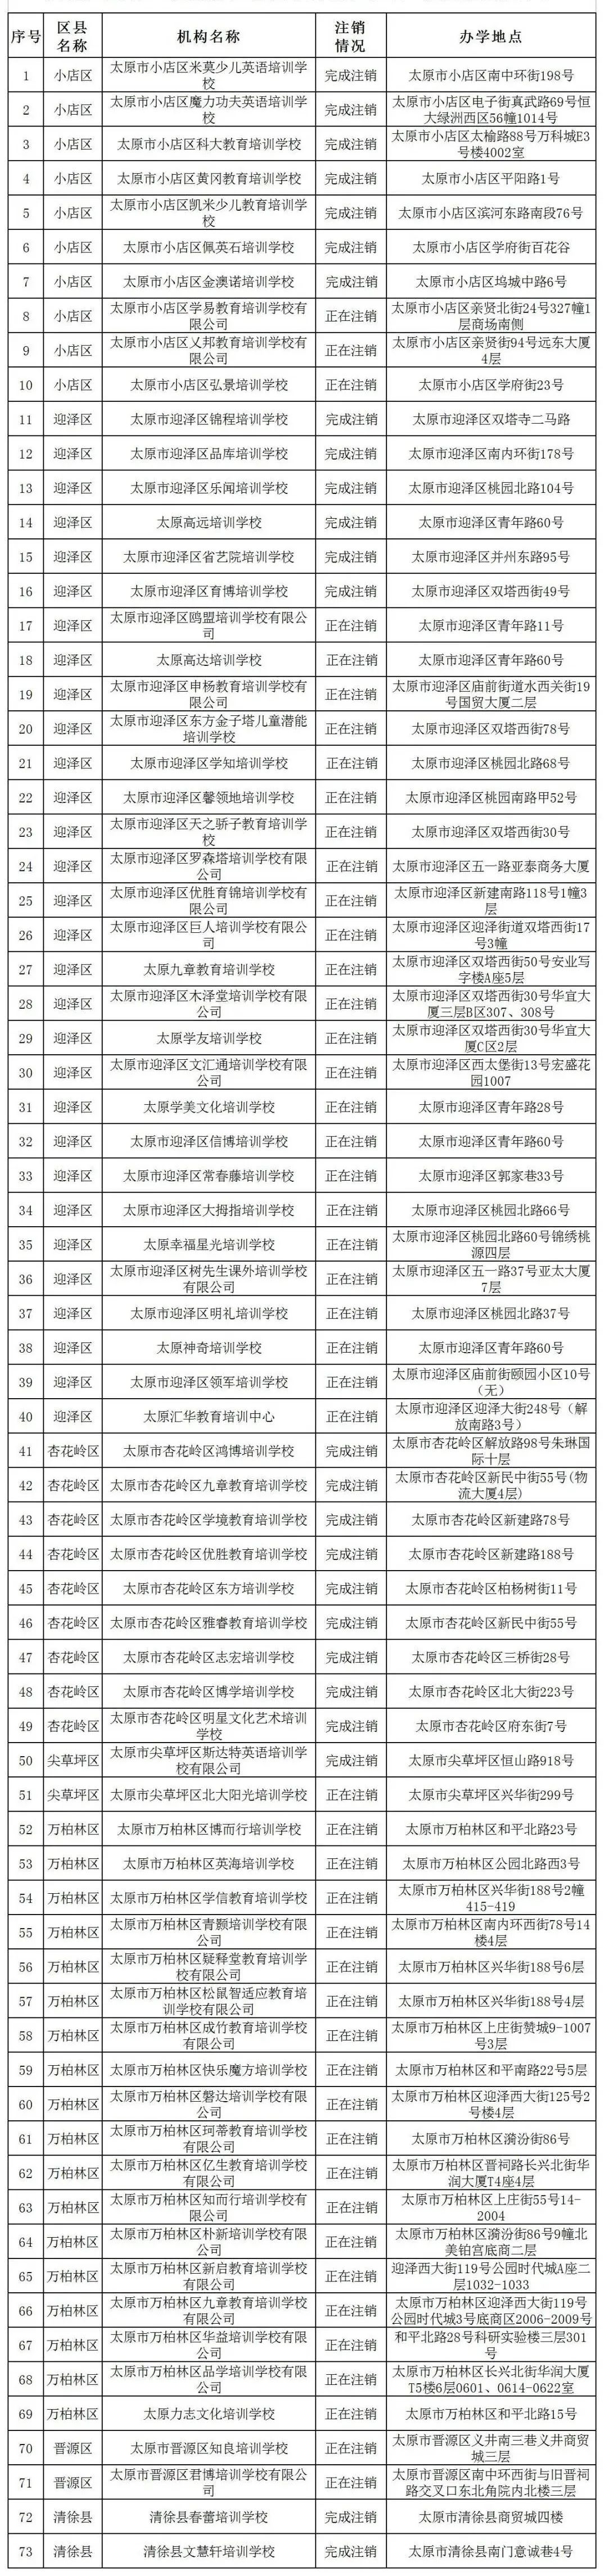 太原市首批73家培训机构注销办学许可证